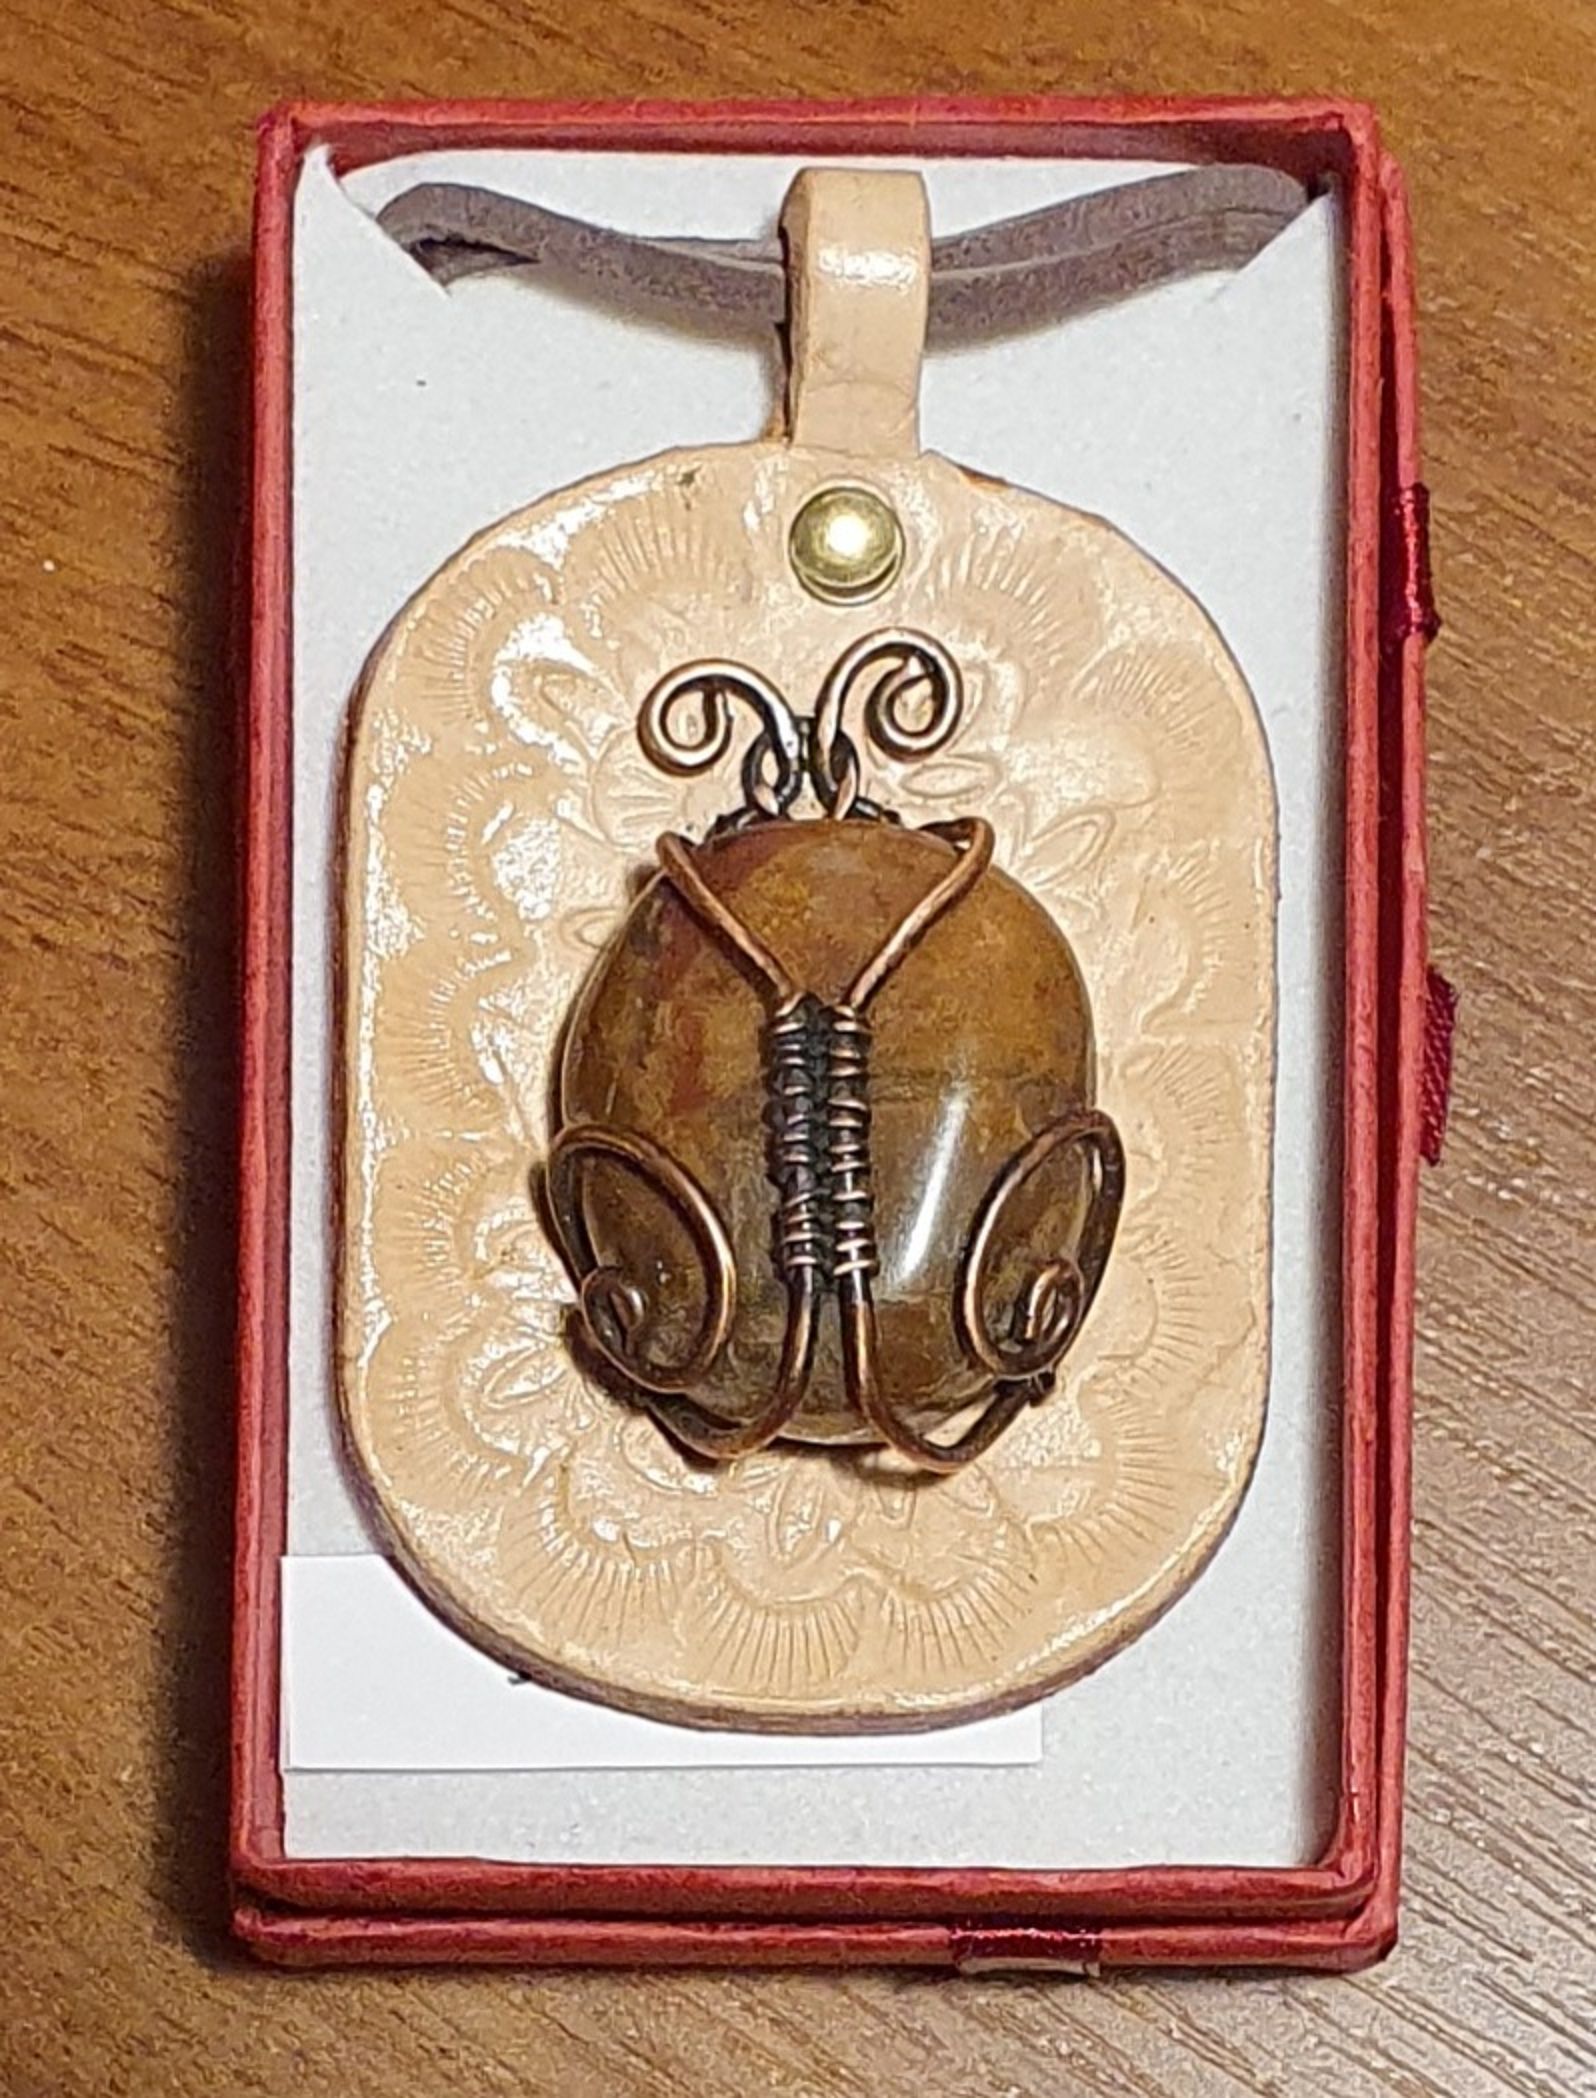 Náhrdelník - Brouček - autorský  drátkovaný šperk s Jaspisem na koženém terči(6x4cm), cena 600 Kč